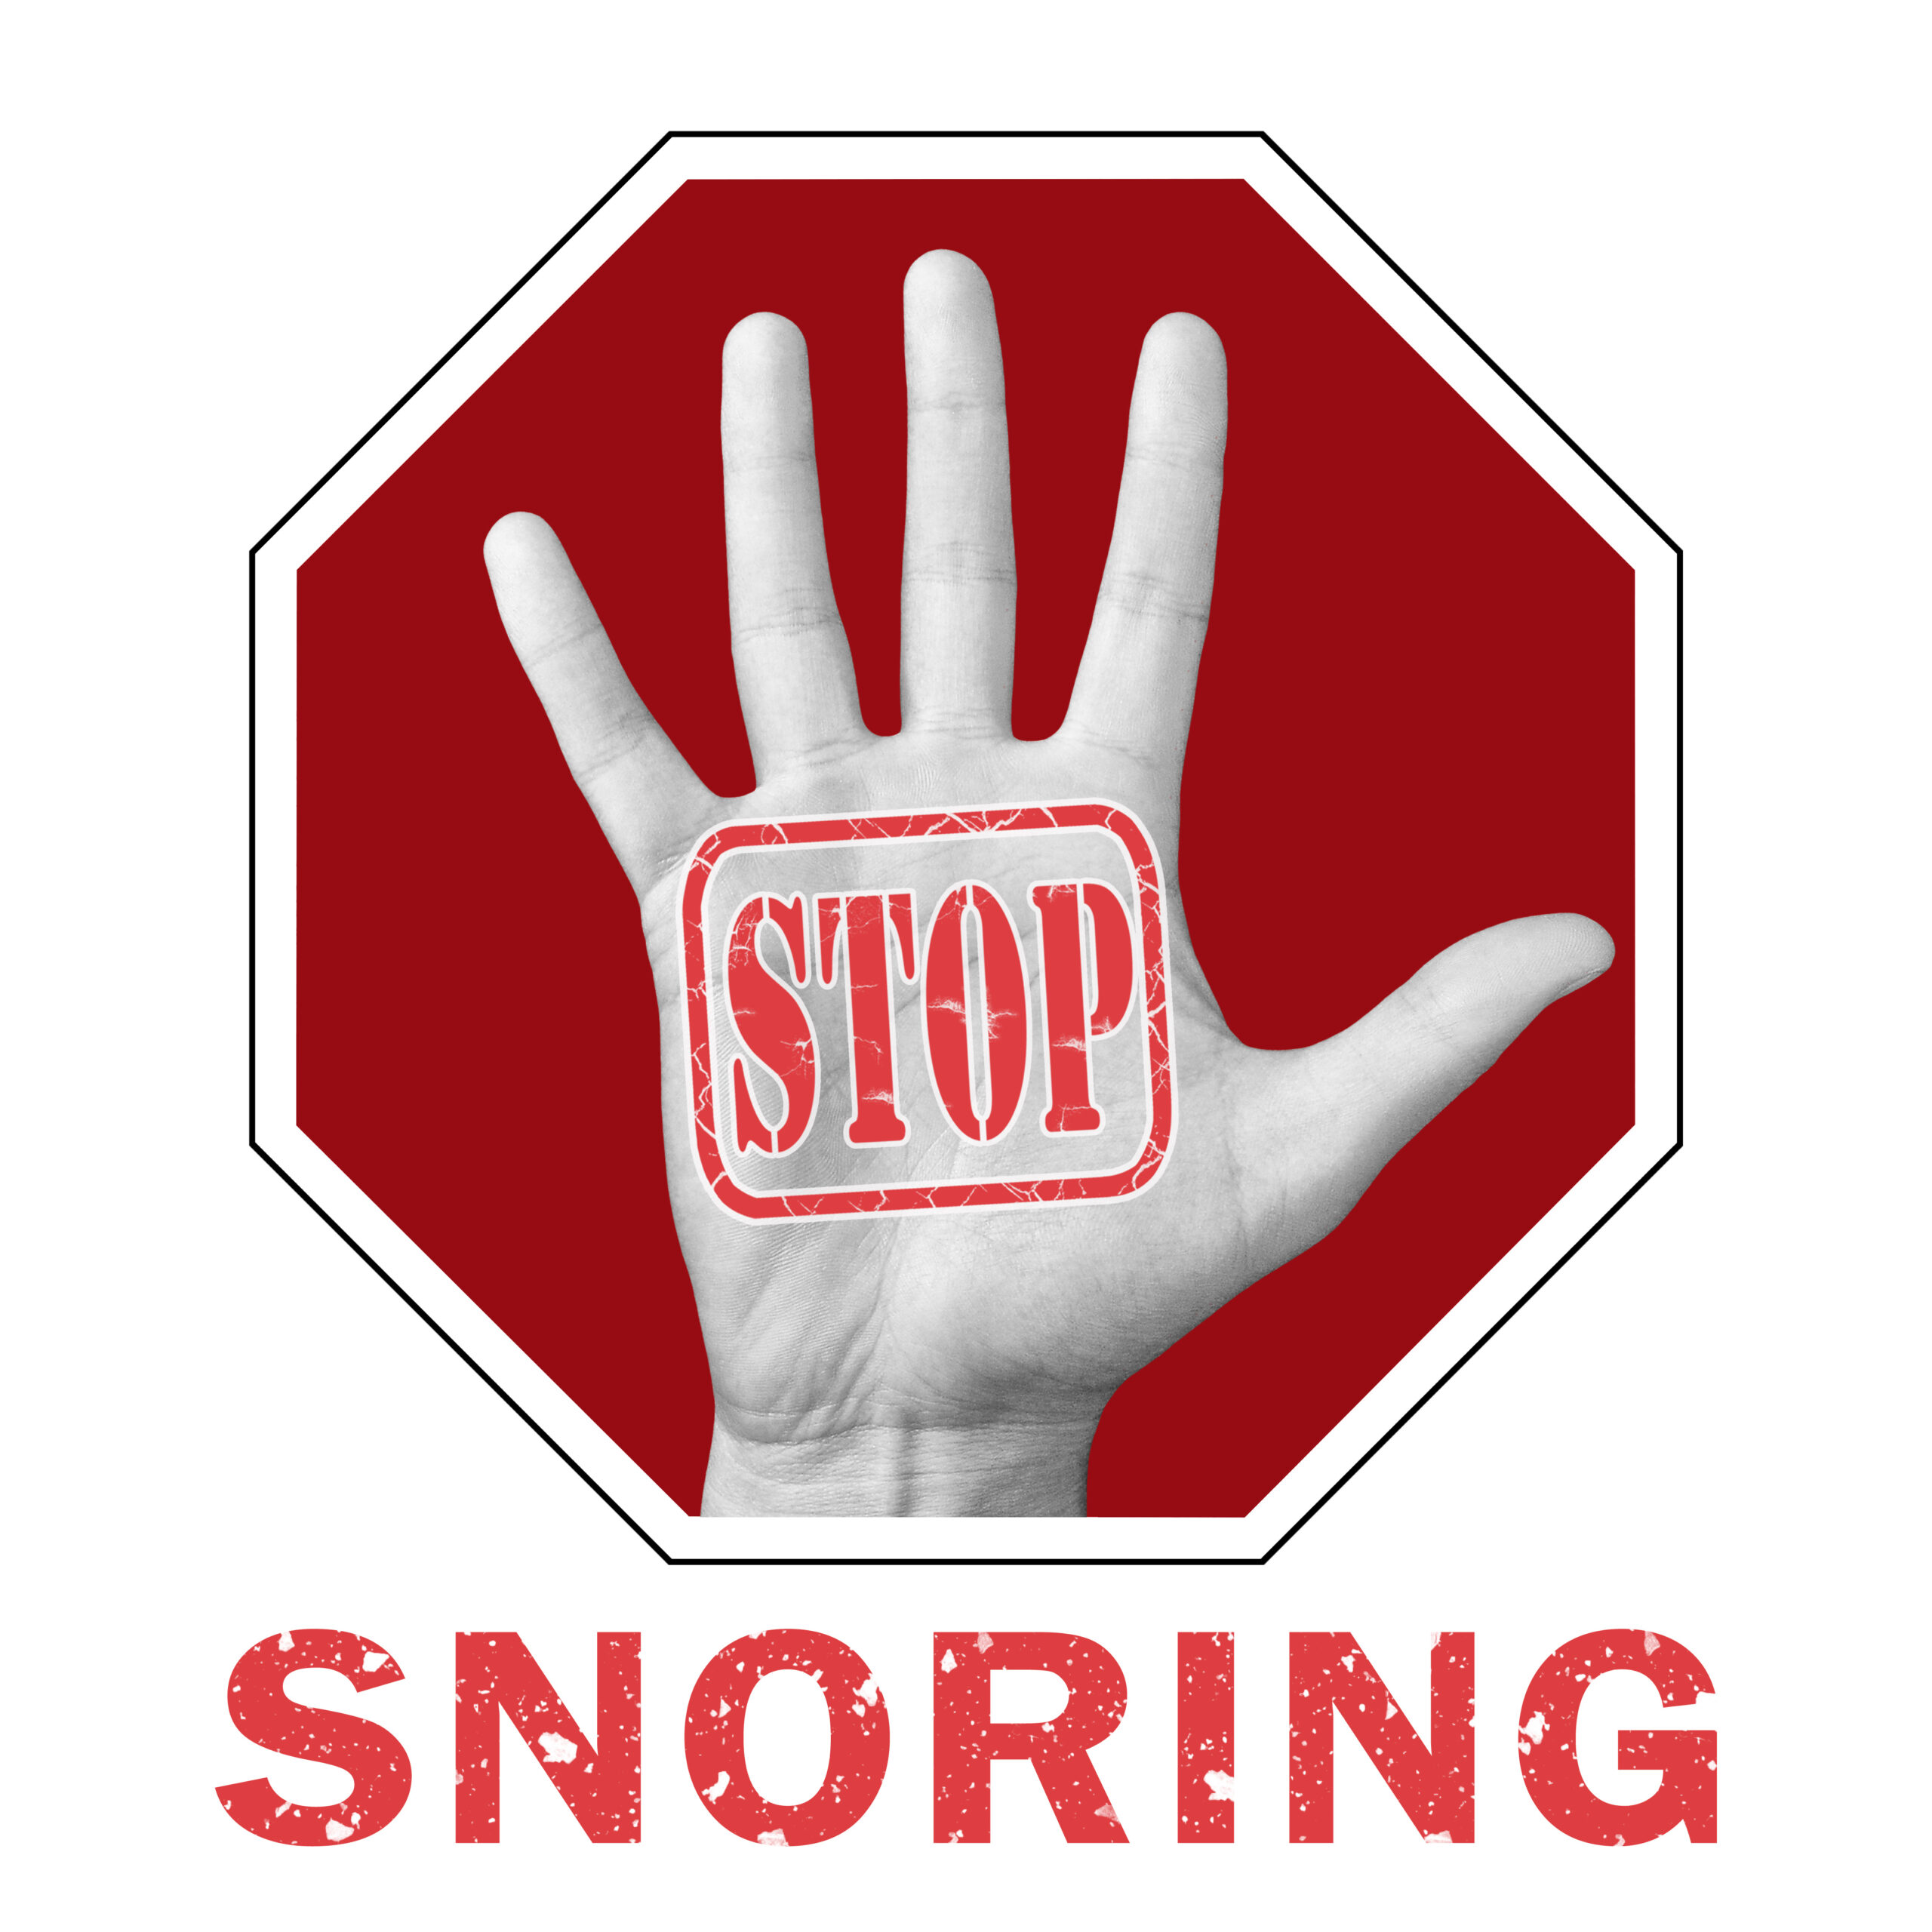 syosset stop snoring